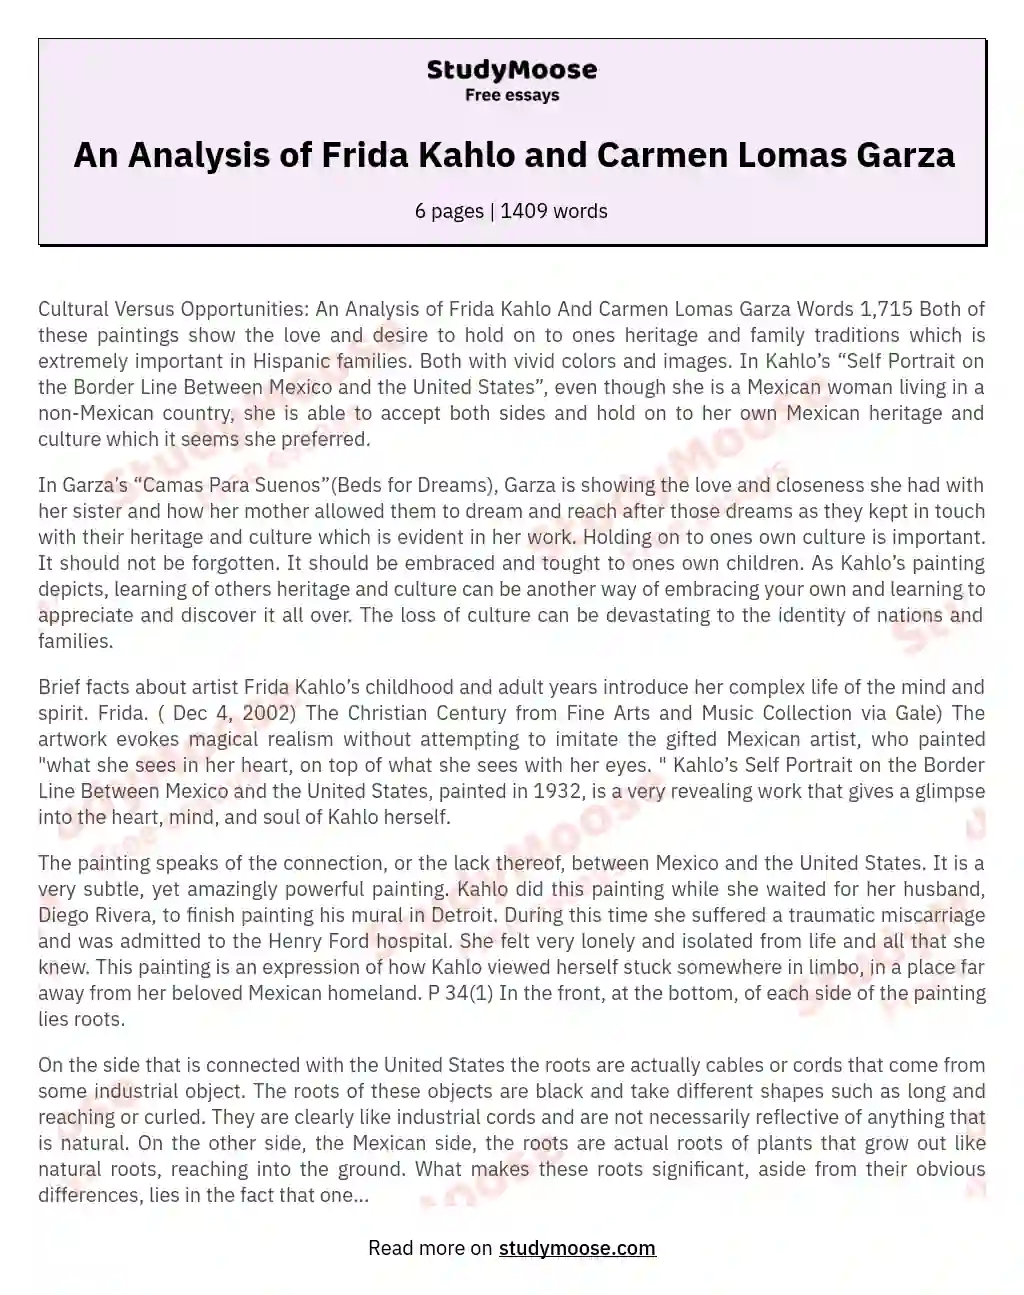 Preserving Cultural Roots: Frida Kahlo and Carmen Lomas Garza's Art essay